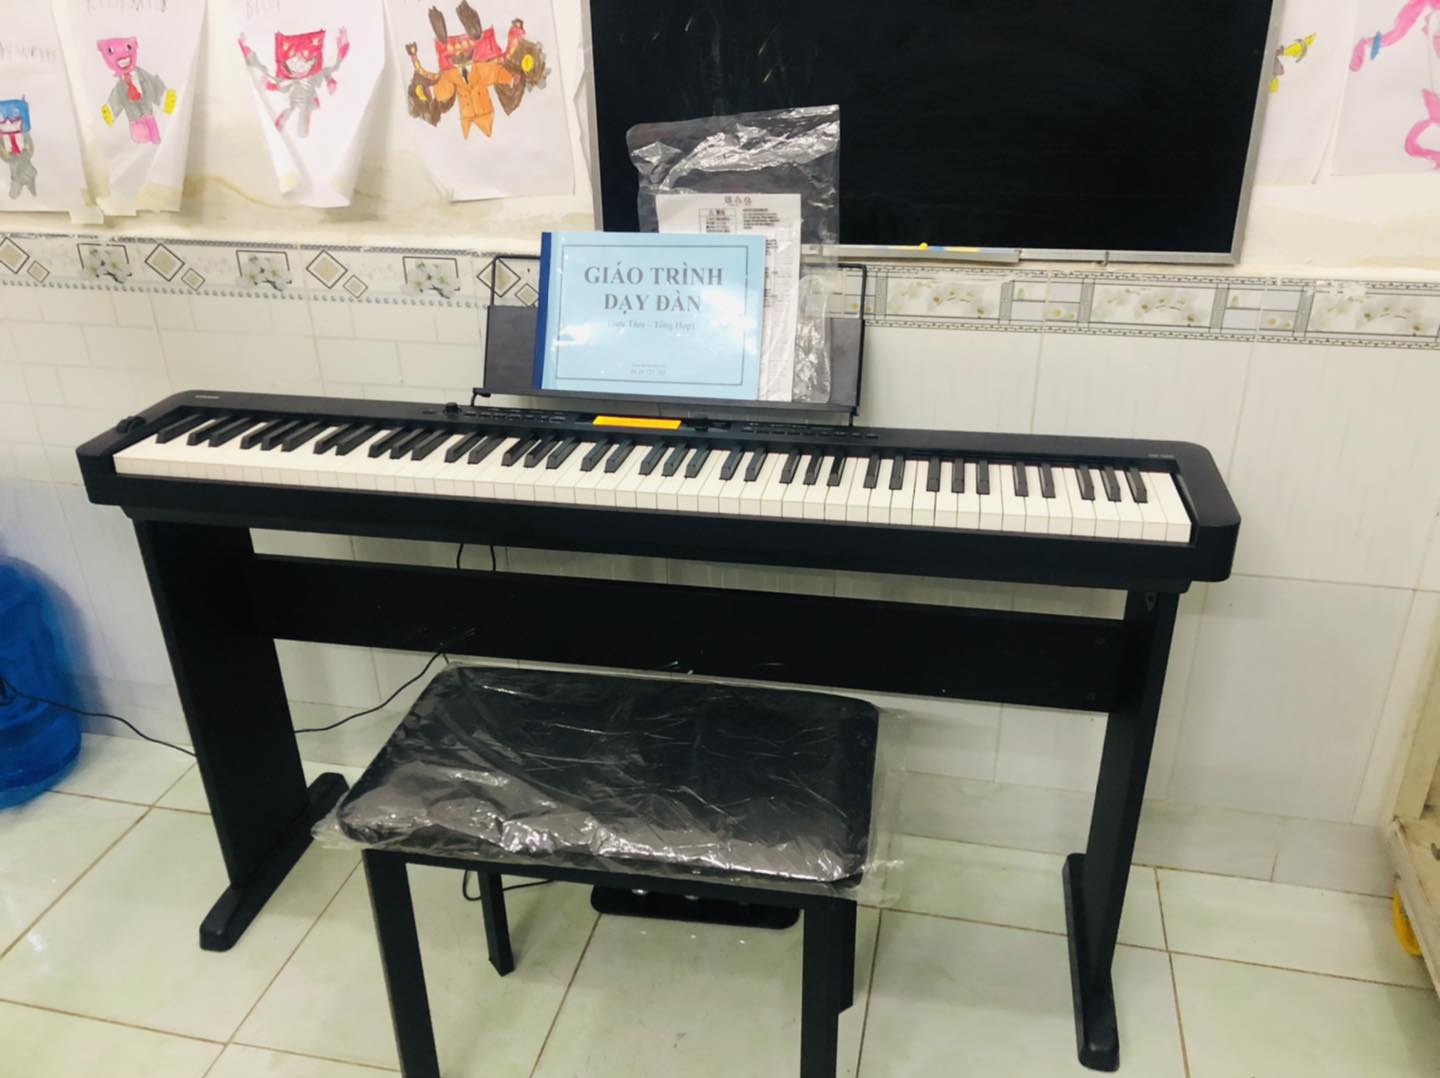 Shop Bán Đàn Piano Cũ Giá Rẻ Tại Tân Phú tpHCM